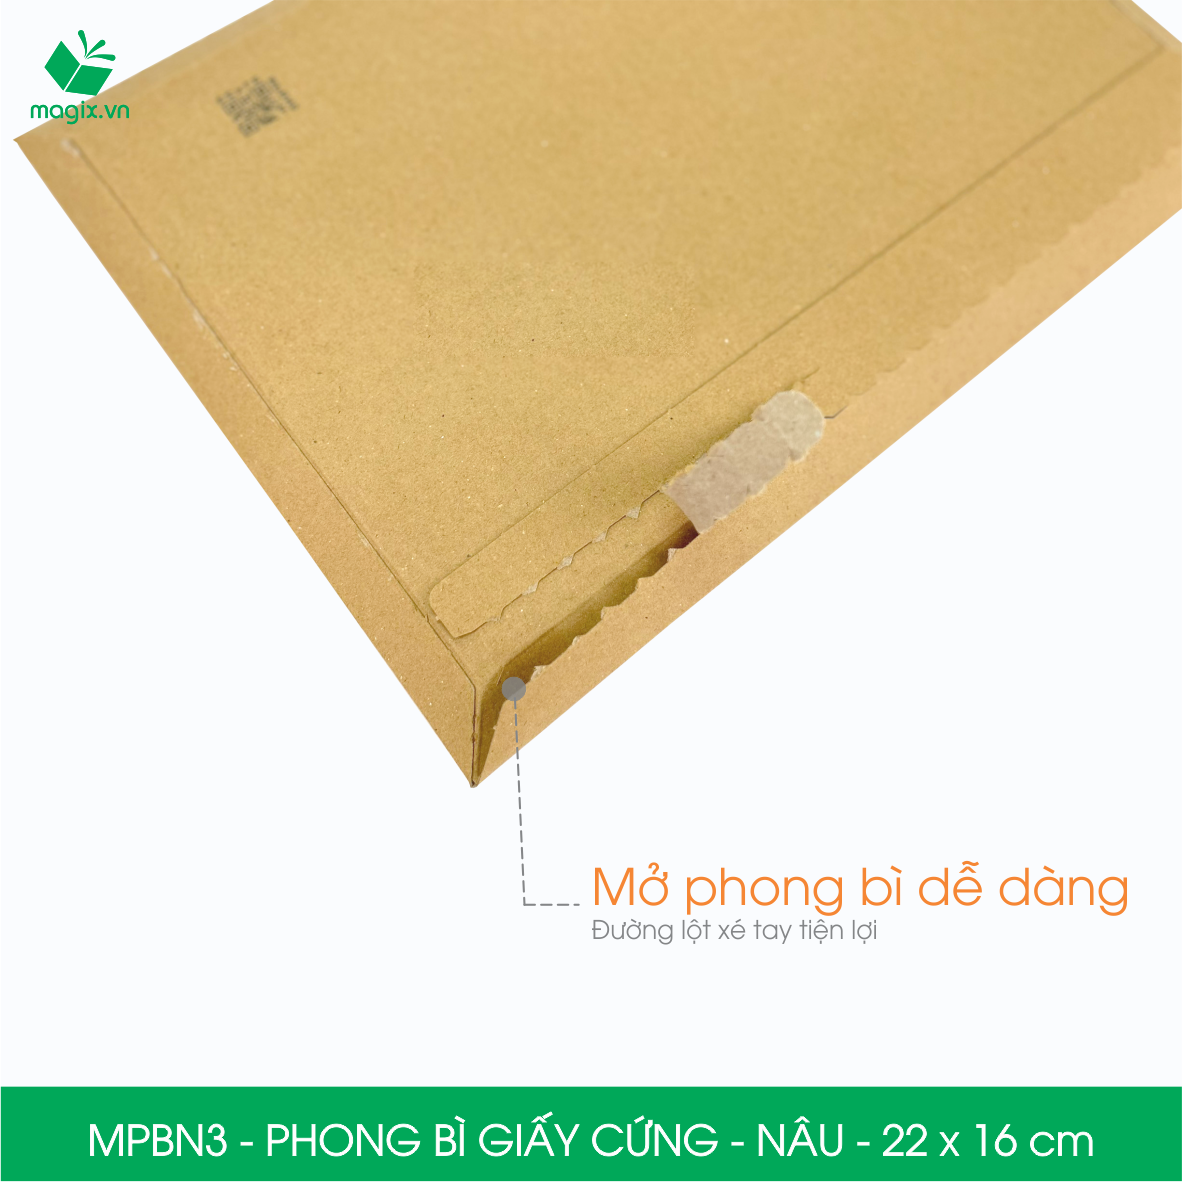 MPBN3 - 22x16 cm - Combo 20 phong bì giấy cứng đóng hàng màu nâu thay thế túi gói hàng